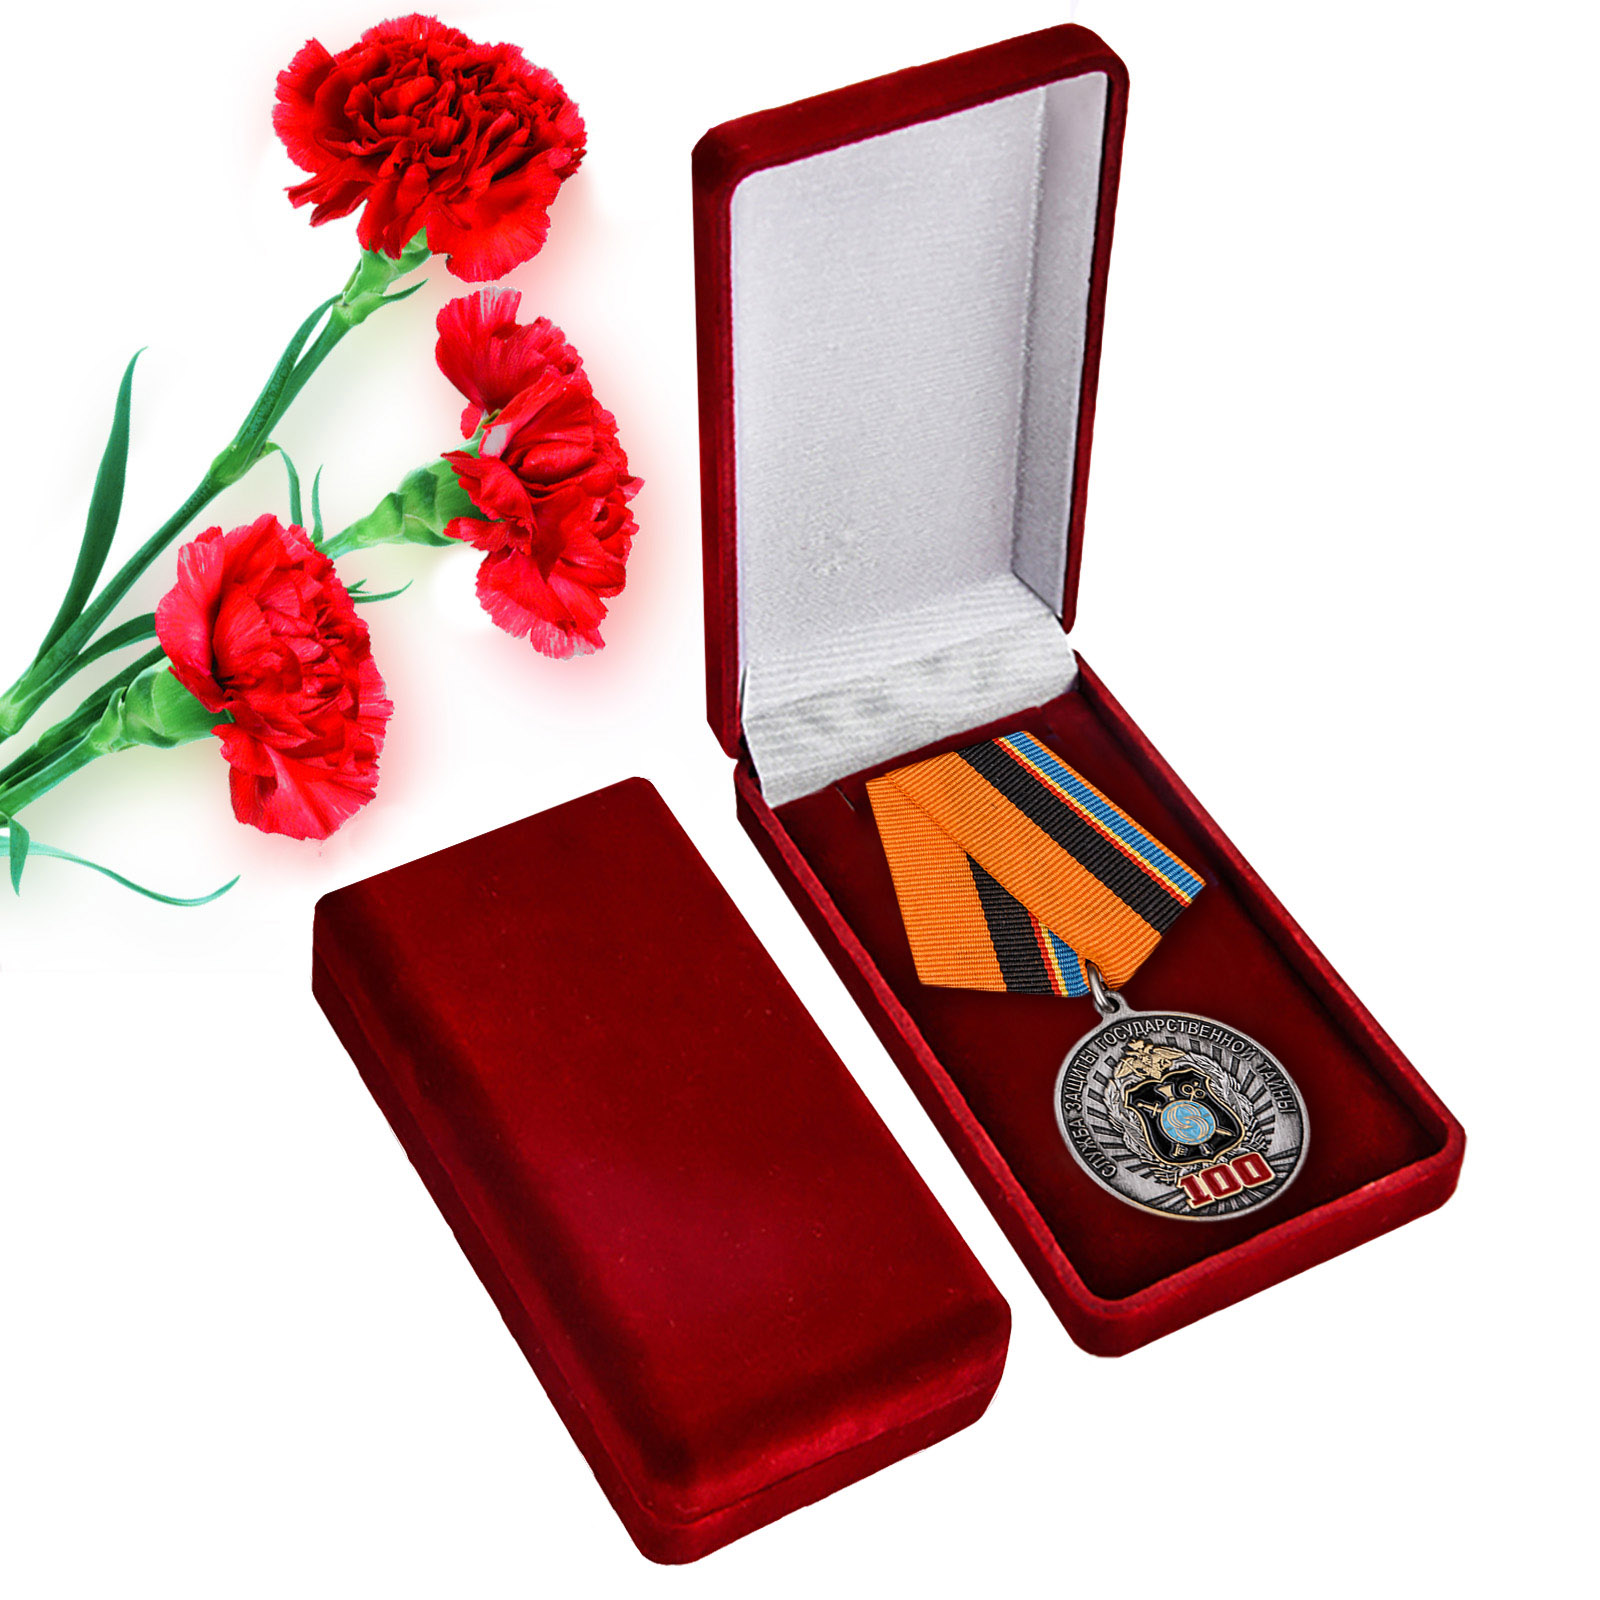 Купить ведомственную медаль "100 лет Службе защиты государственной тайны" онлайн выгодно